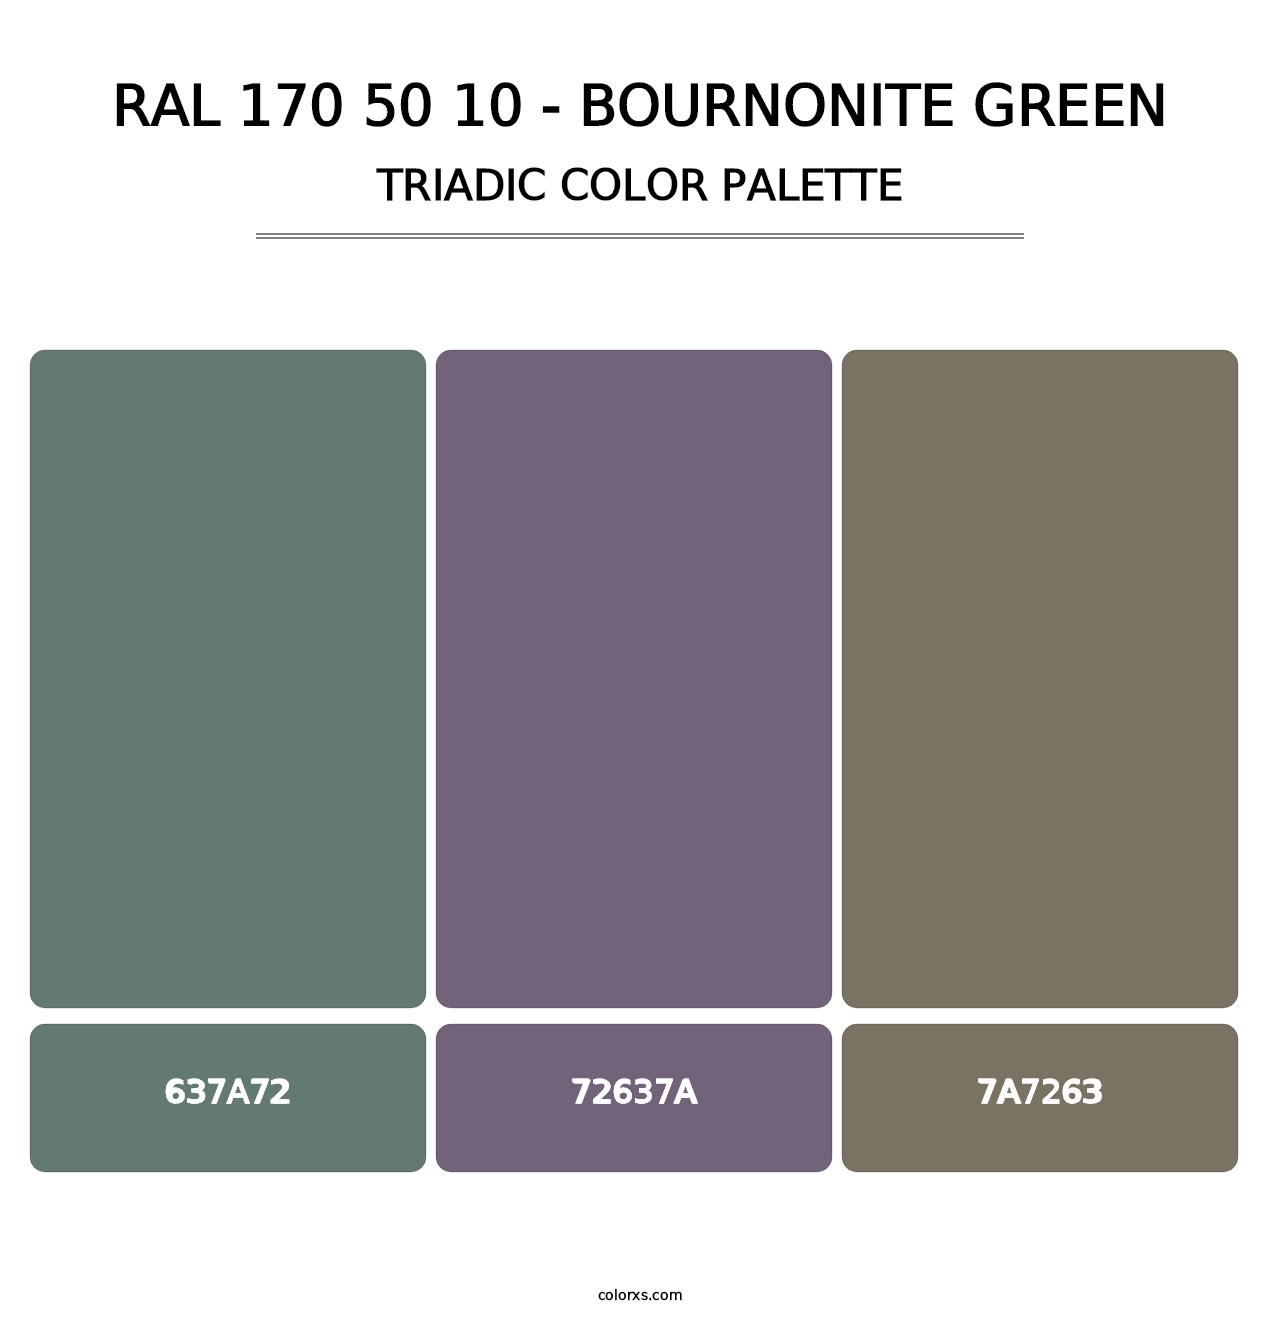 RAL 170 50 10 - Bournonite Green - Triadic Color Palette